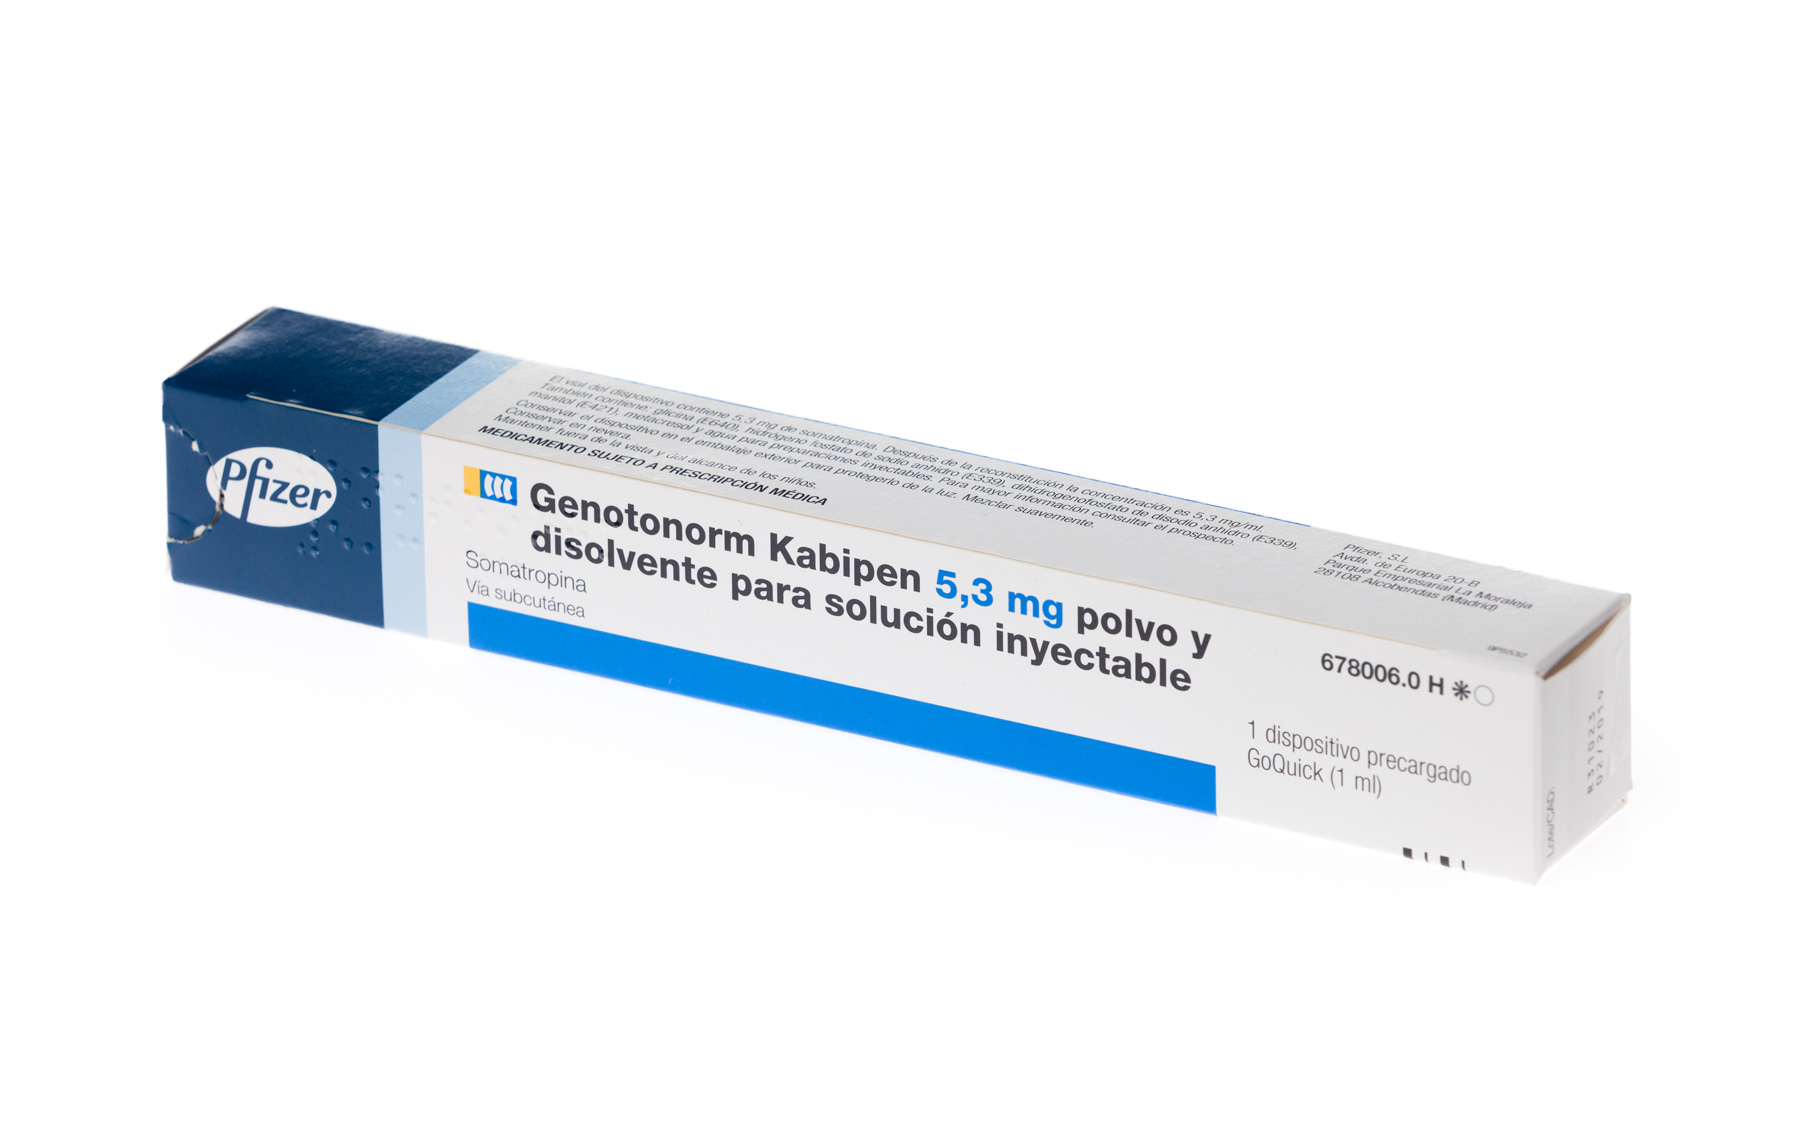 GENOTONORM KABIPEN 5,3 mg 1 DISPOSITIVO GOQUICK PRECARGADO DOBLE CAMARA POLVO Y DISOLVENTE PARA SOLUCION INYECTABLE